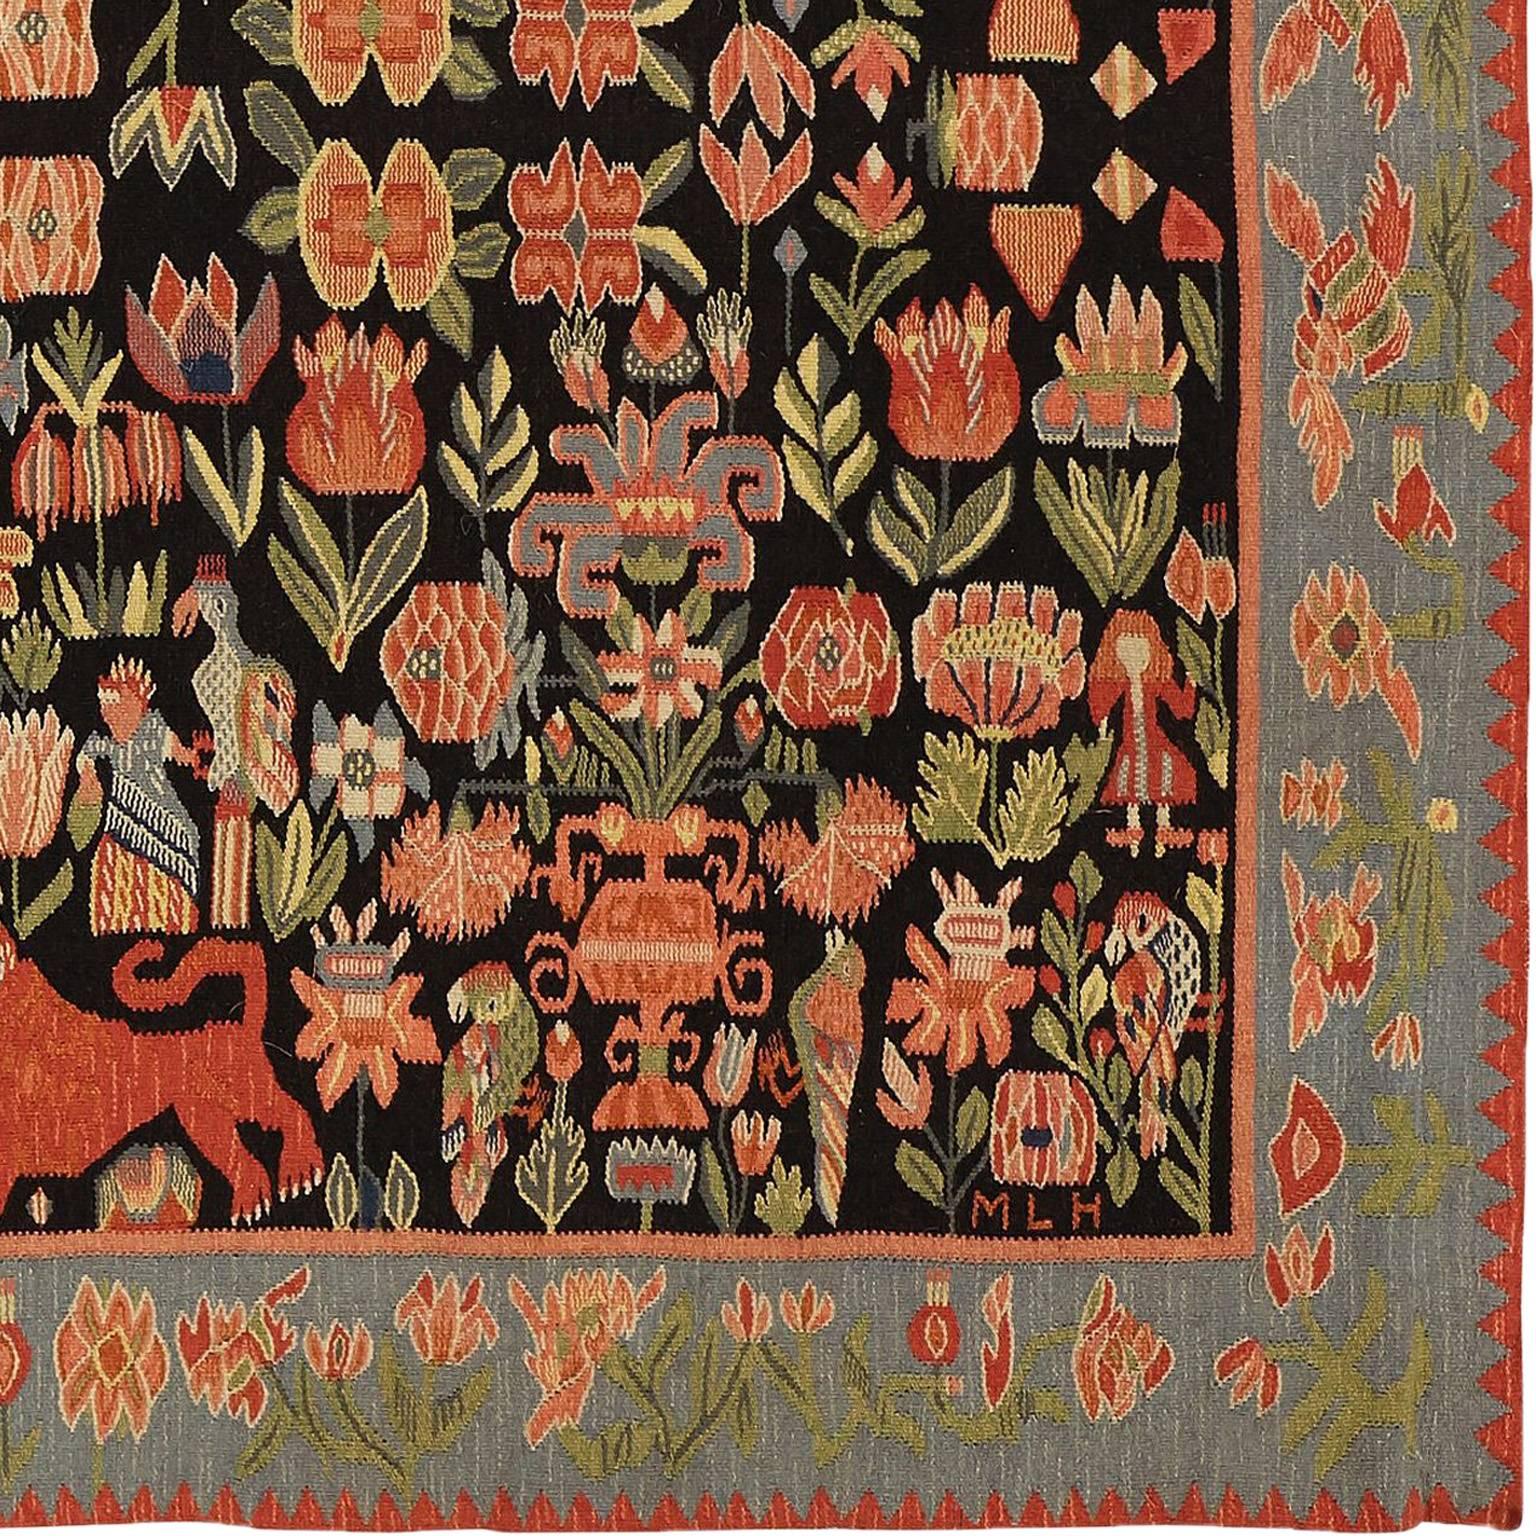 Schwedischer Bettüberzug/Wandteppich
Schweden, um 1927
Dunkelbrauner Grund mit polychromen Vasen, roten Löwen, Vögeln, Adeligen und Blumen. Eine blaue Melange-Bordüre mit stilisierten Blumen. Nach 